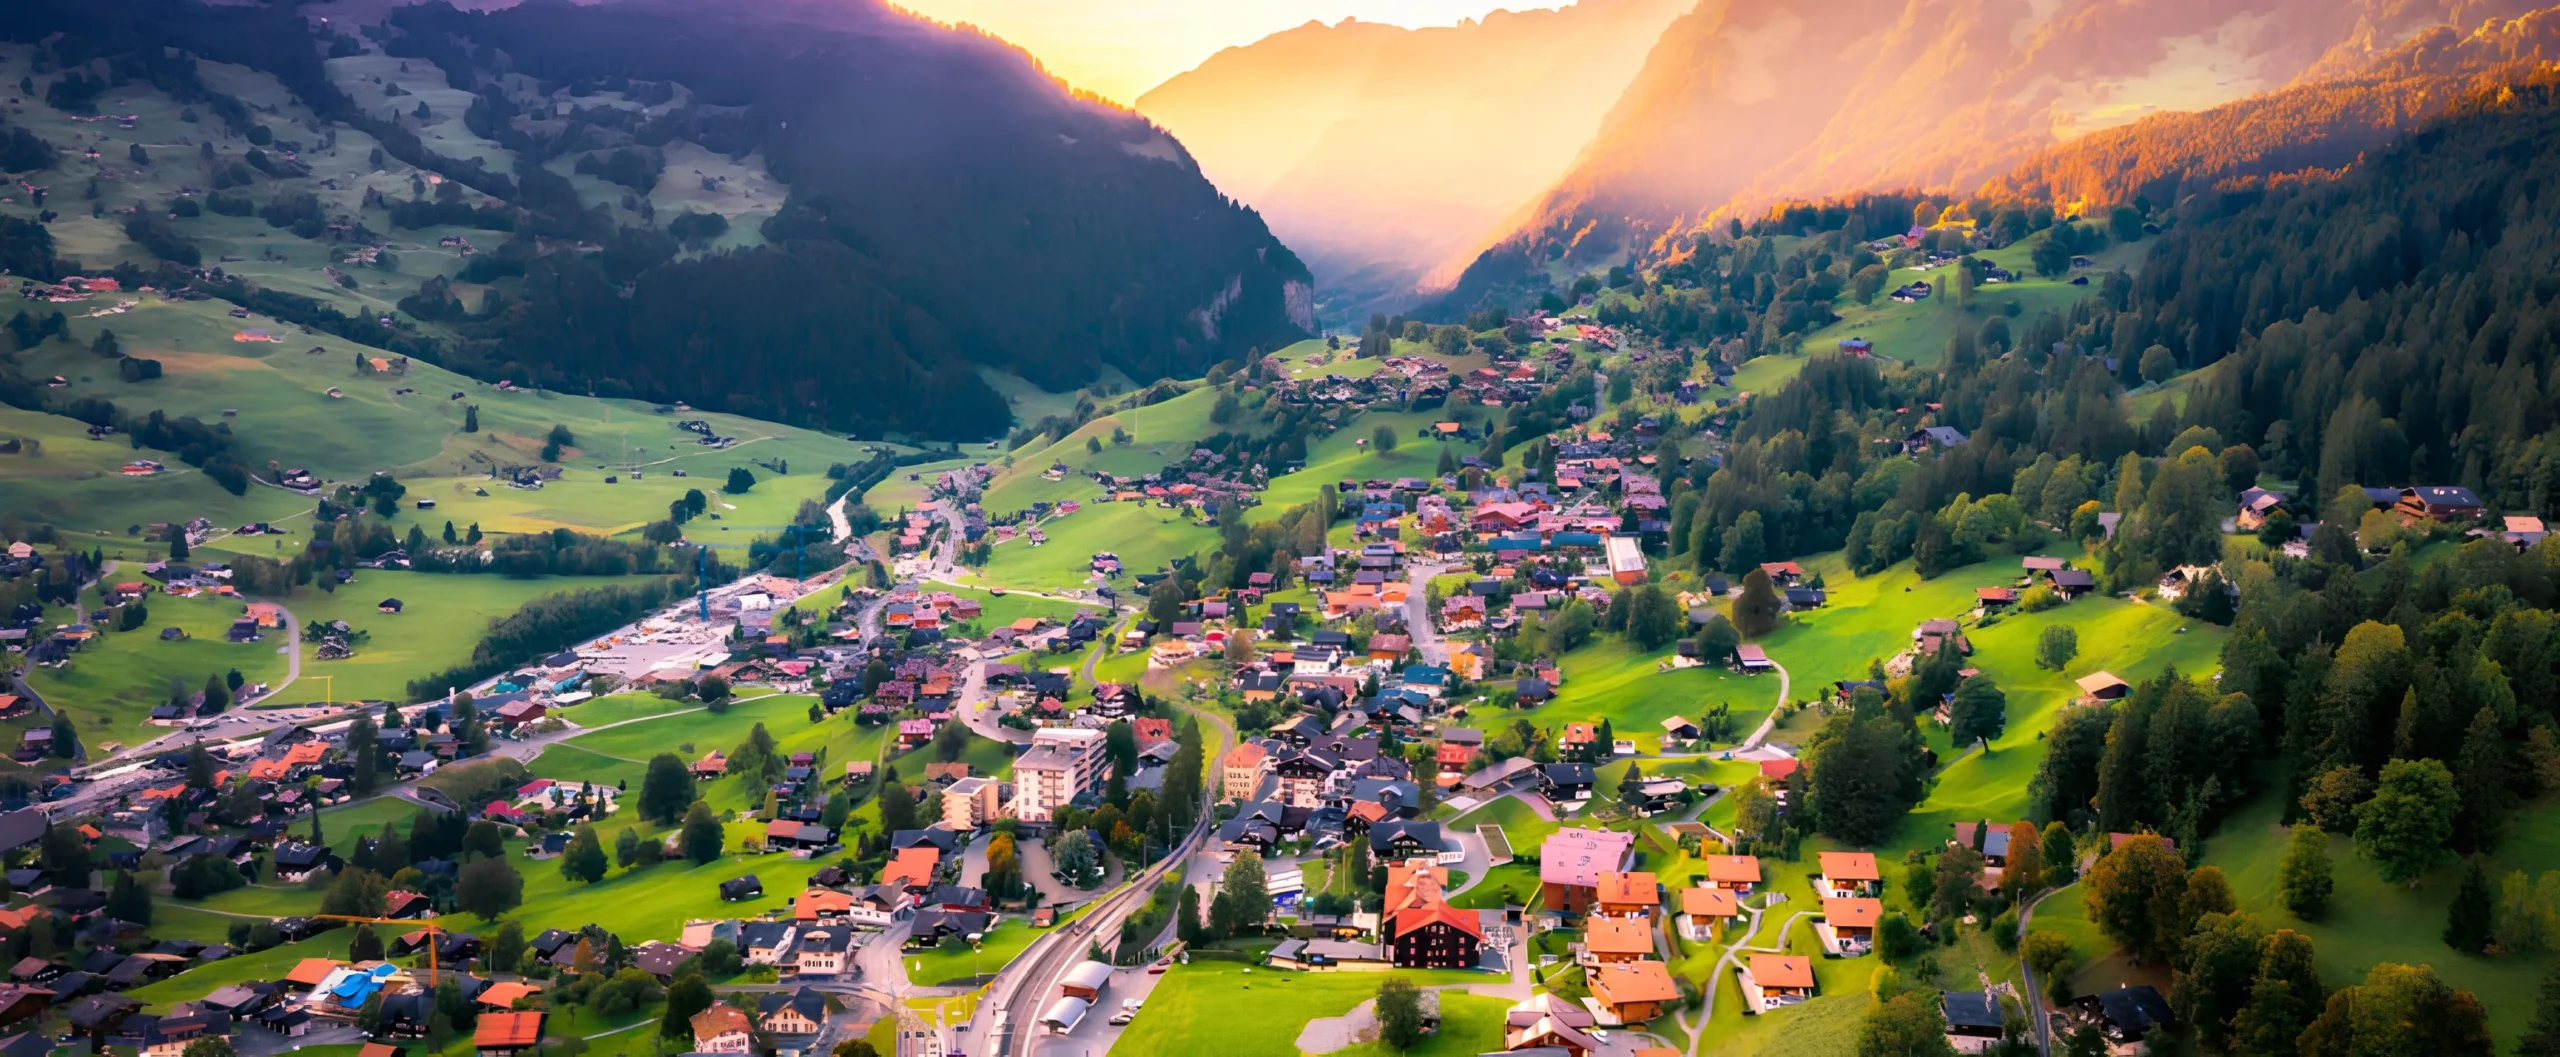 Switzerland Trip